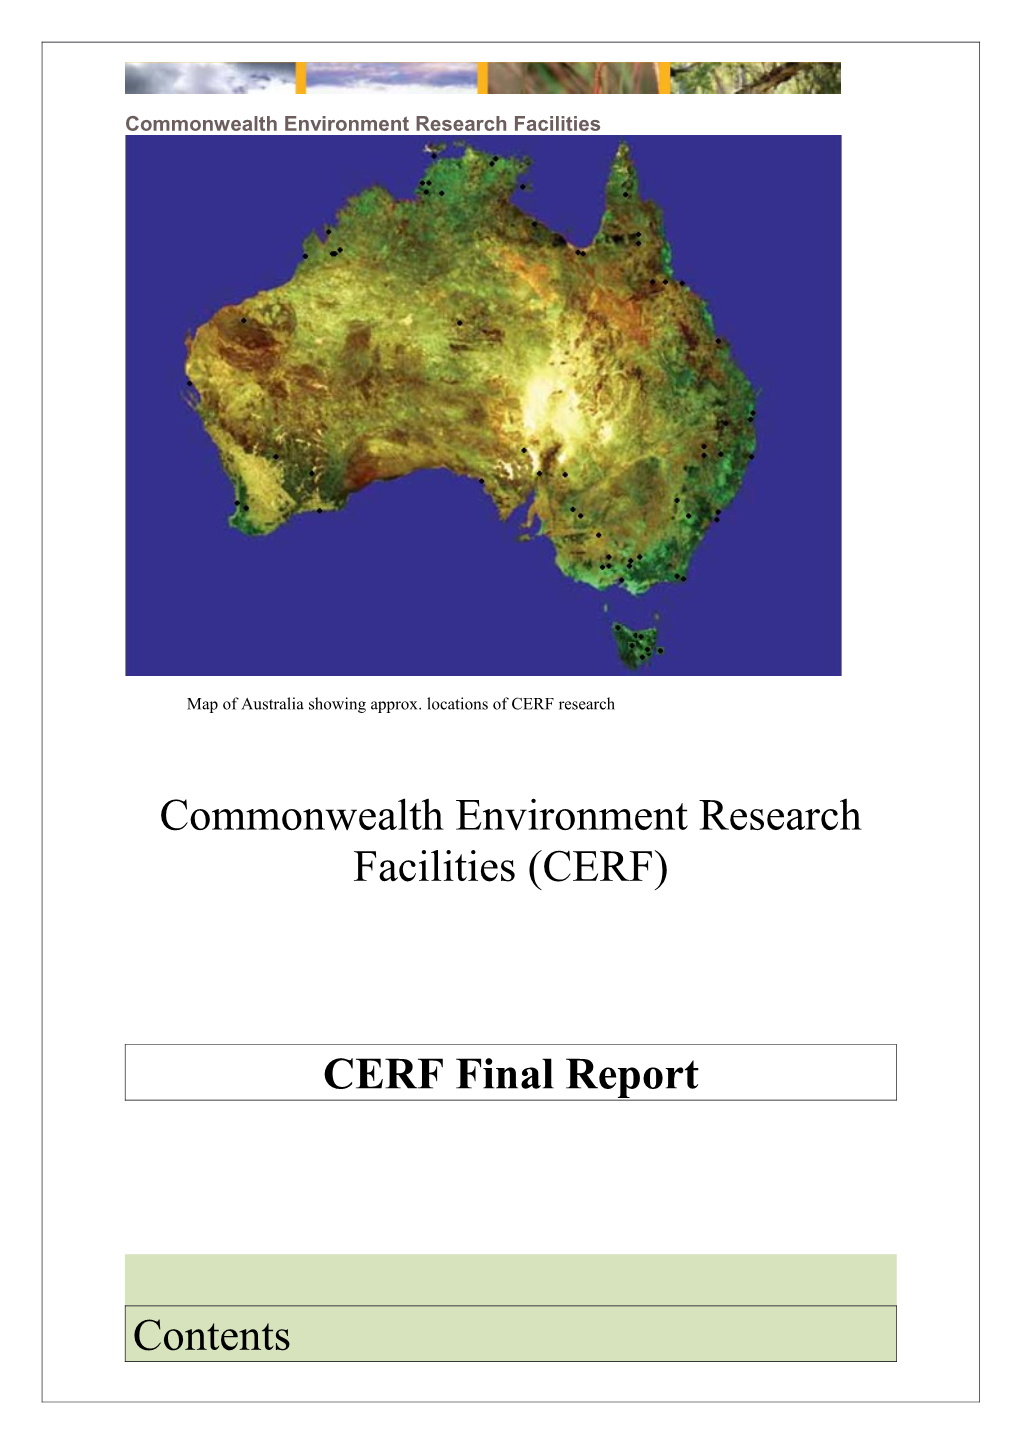 CERF Final Report 2011